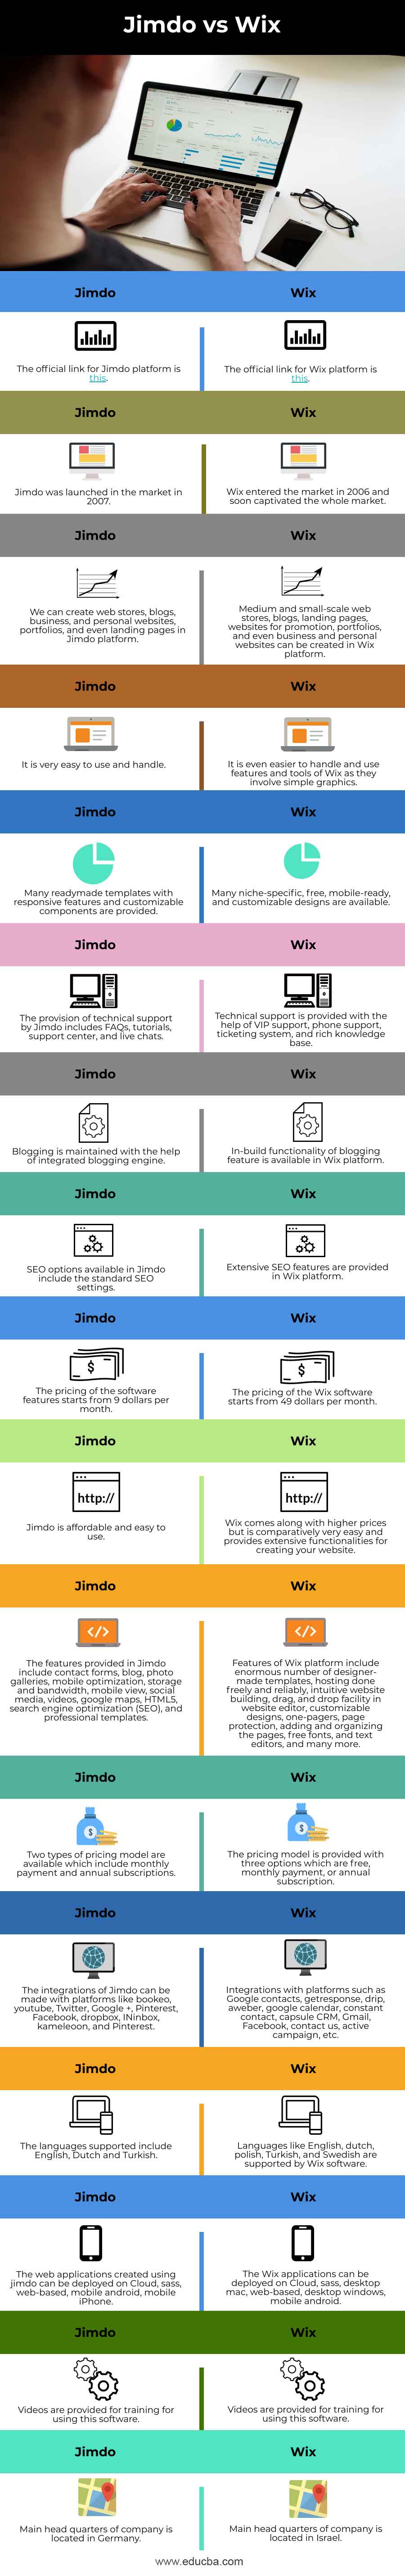 Jimdo-vs-Wix-info